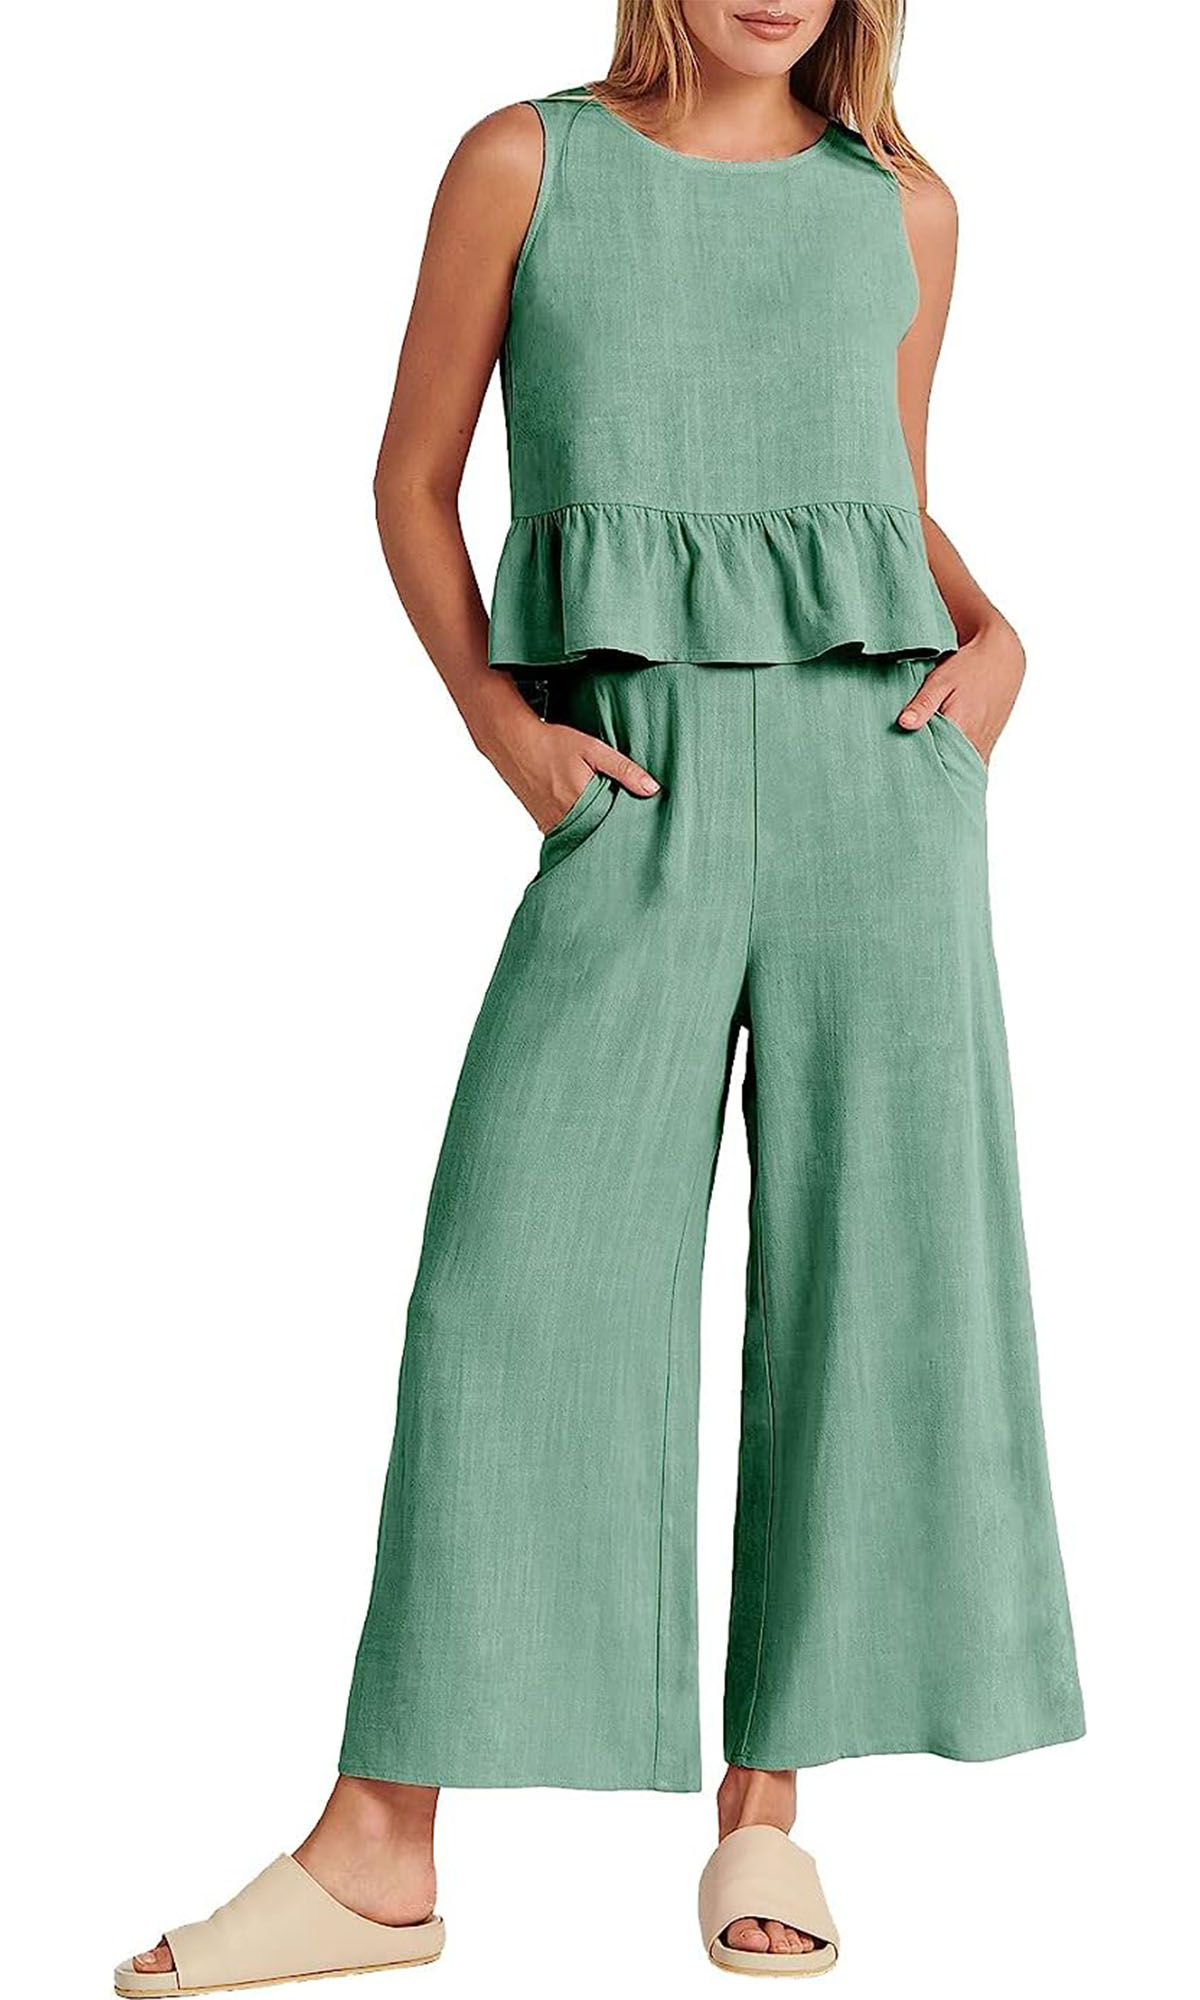 Elegancia y versatilidad en conjuntos de pantalón ancho y blusa ligera